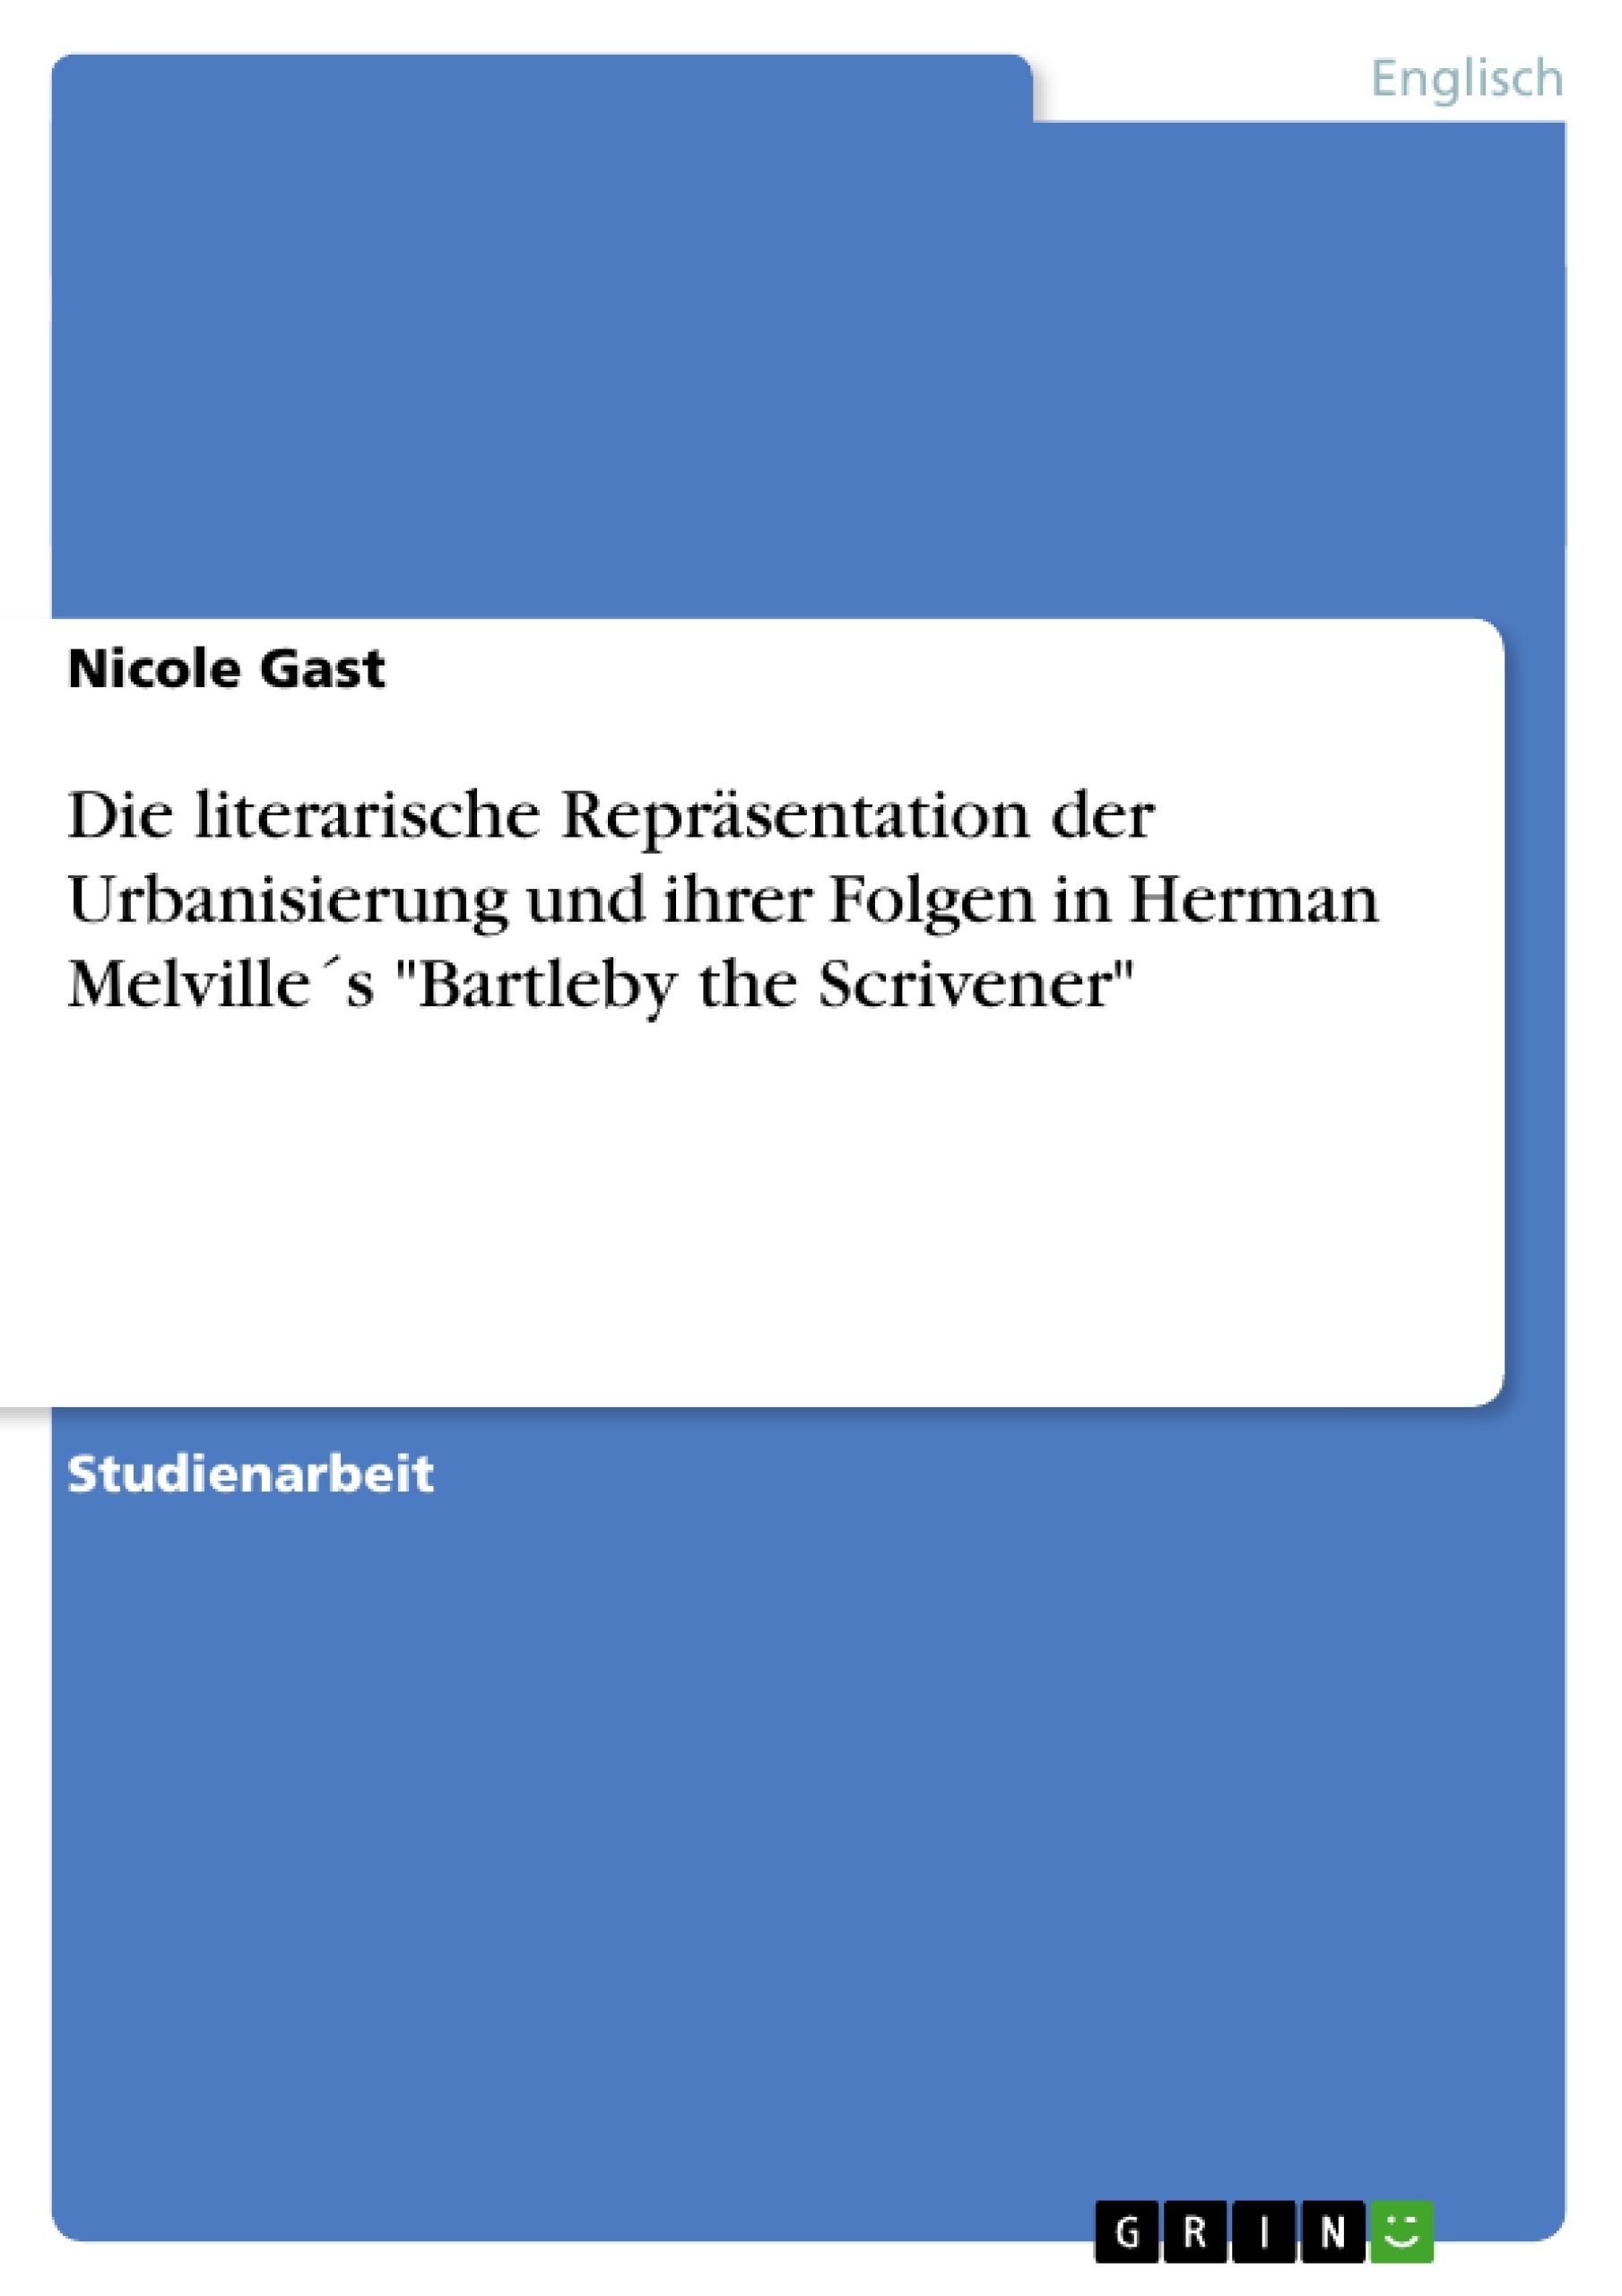 Titre: Die literarische Repräsentation der Urbanisierung und ihrer Folgen in Herman Melville´s "Bartleby the Scrivener"